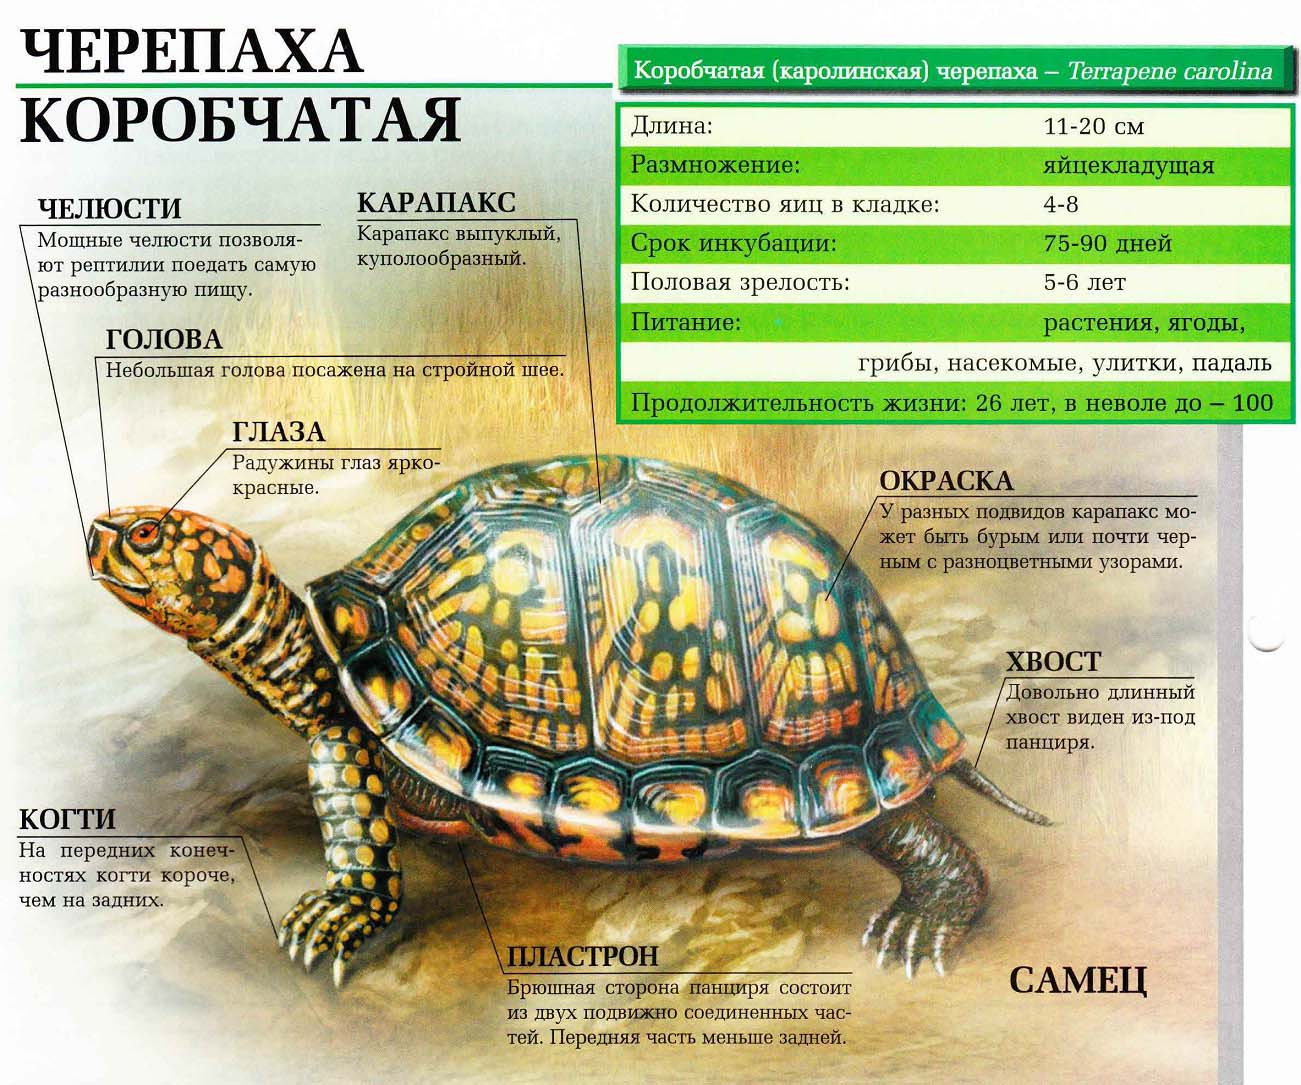 Описание коробчатой (каролинской) черепахи.